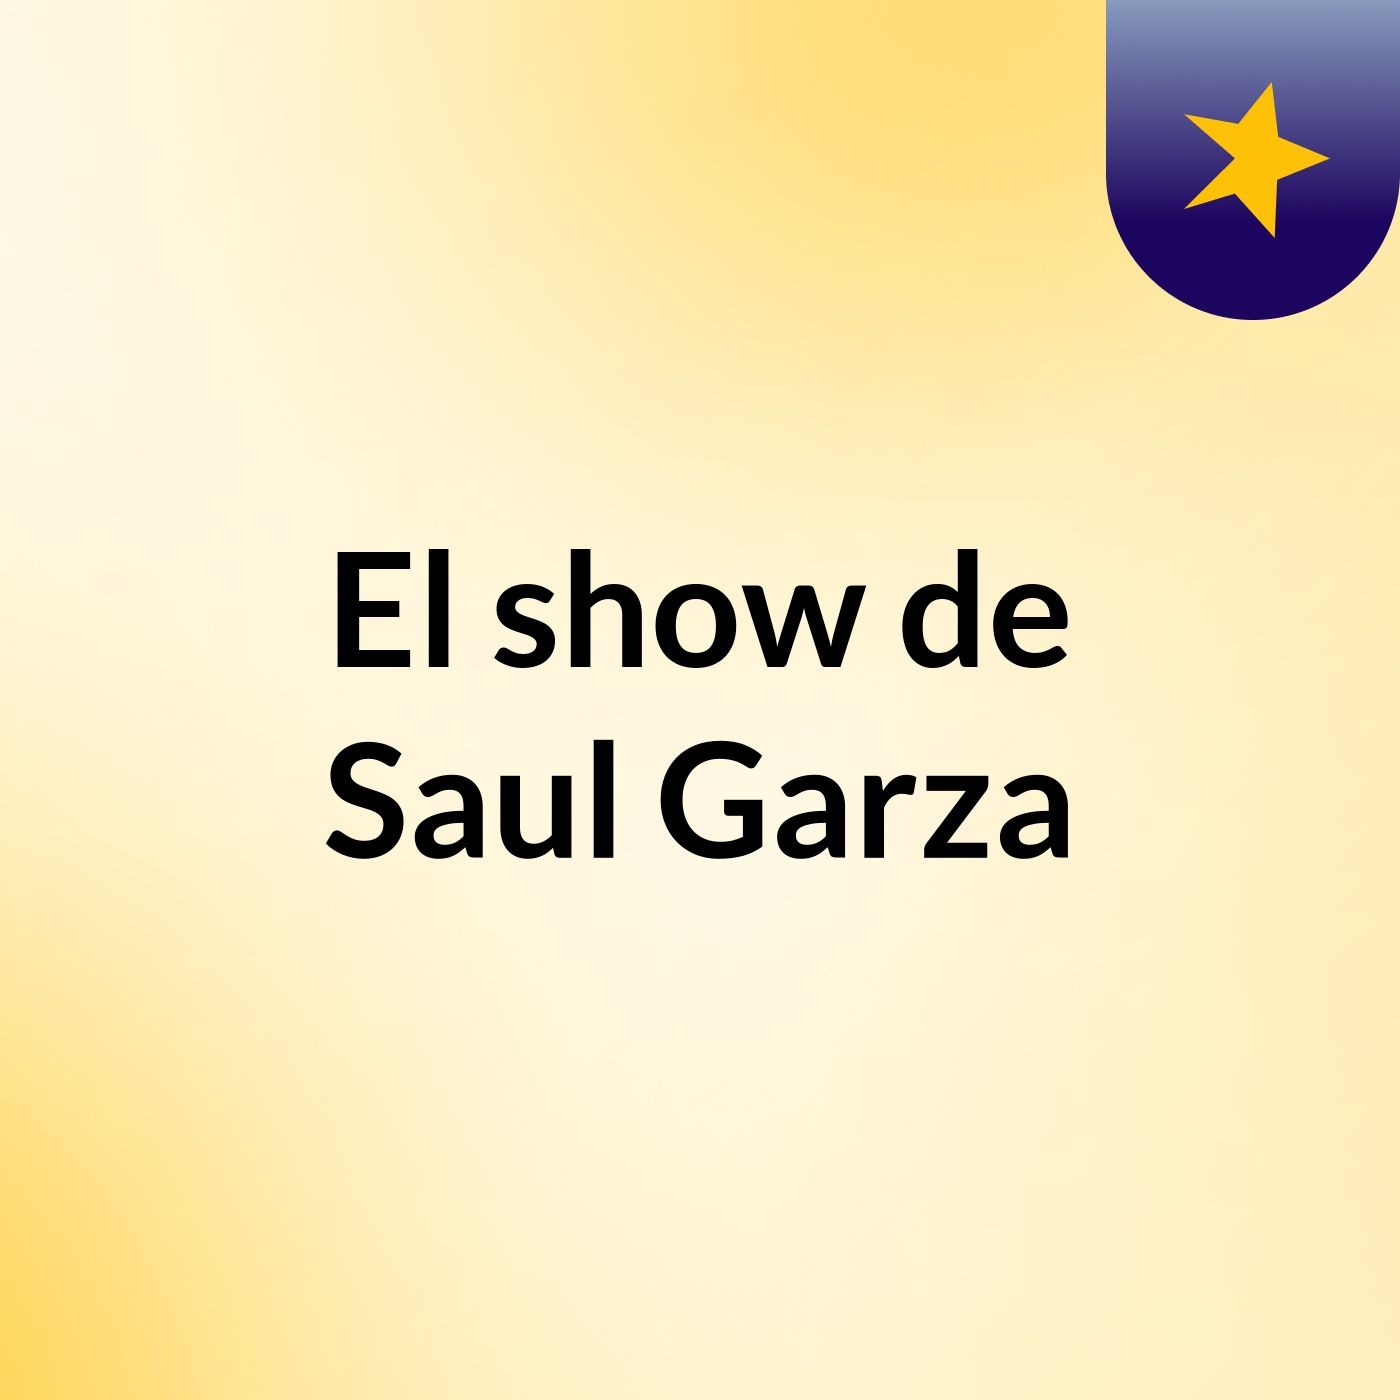 El show de Saul Garza